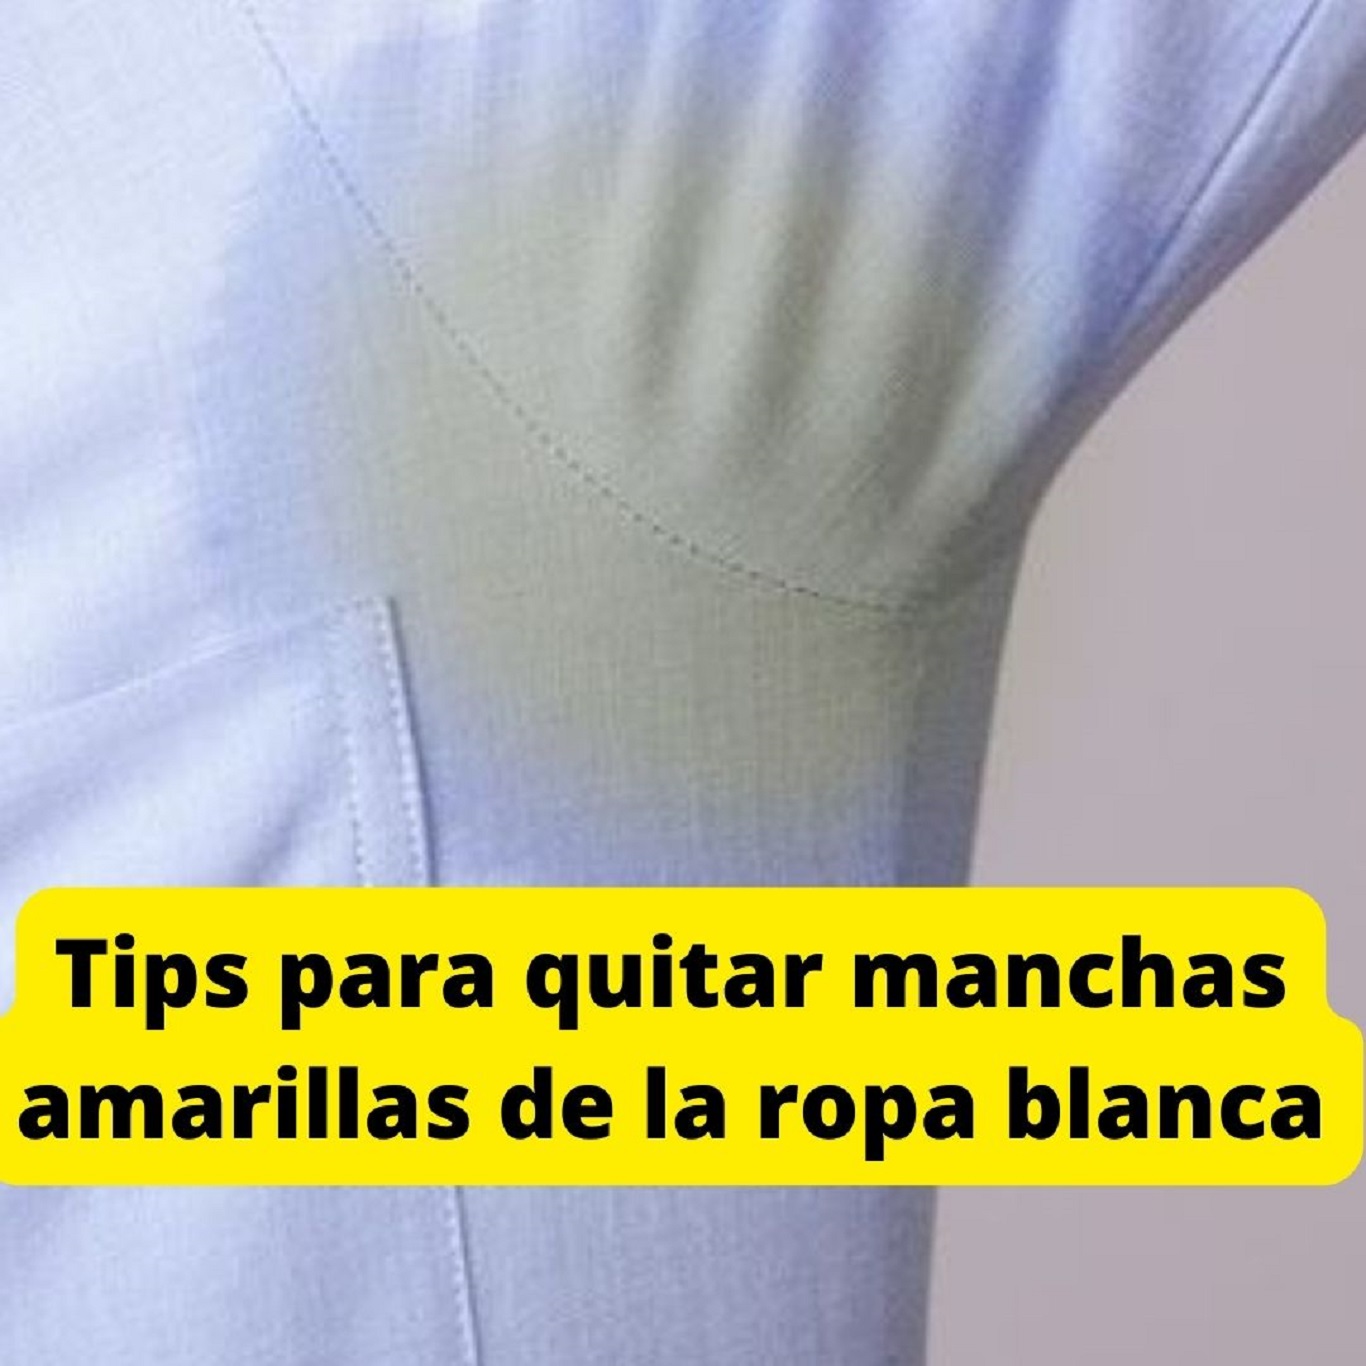 Tres trucos para quitar manchas amarillas de la ropa blanca - Mendoza Post